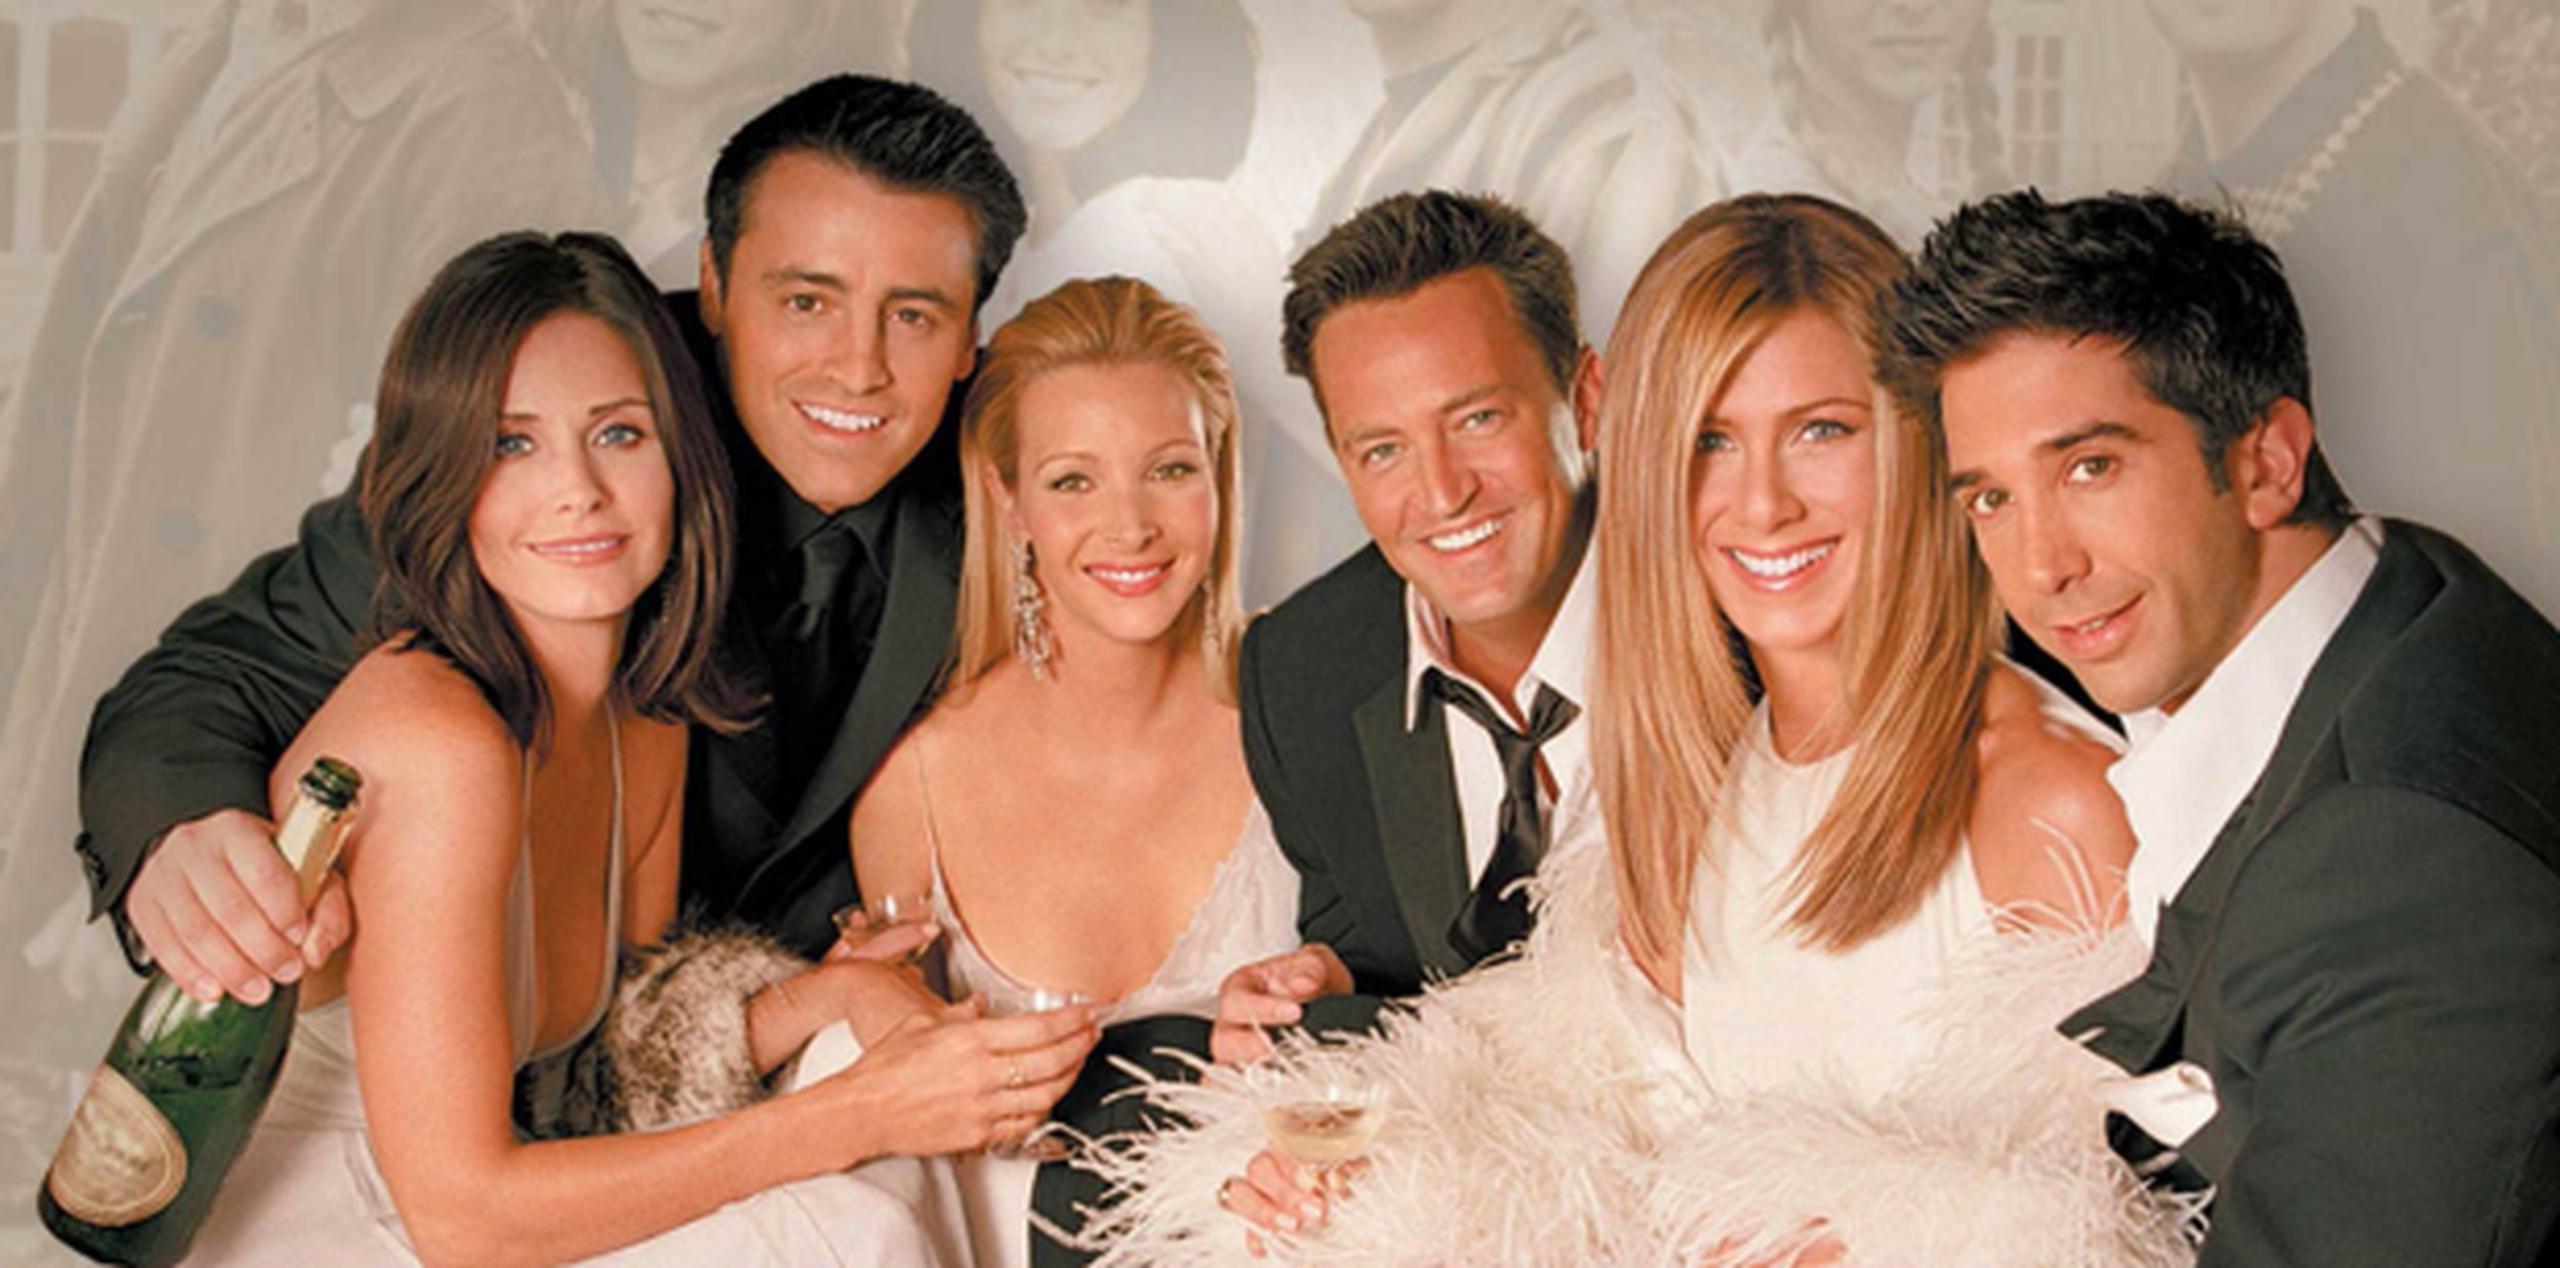 Con su energía y juventud, Rachel, Monica, Phoebe, Joey, Chandler y Ross tenían la personalidad y empatía suficientes para superar los 24 millones de espectadores en su primera temporada. (Archivo)